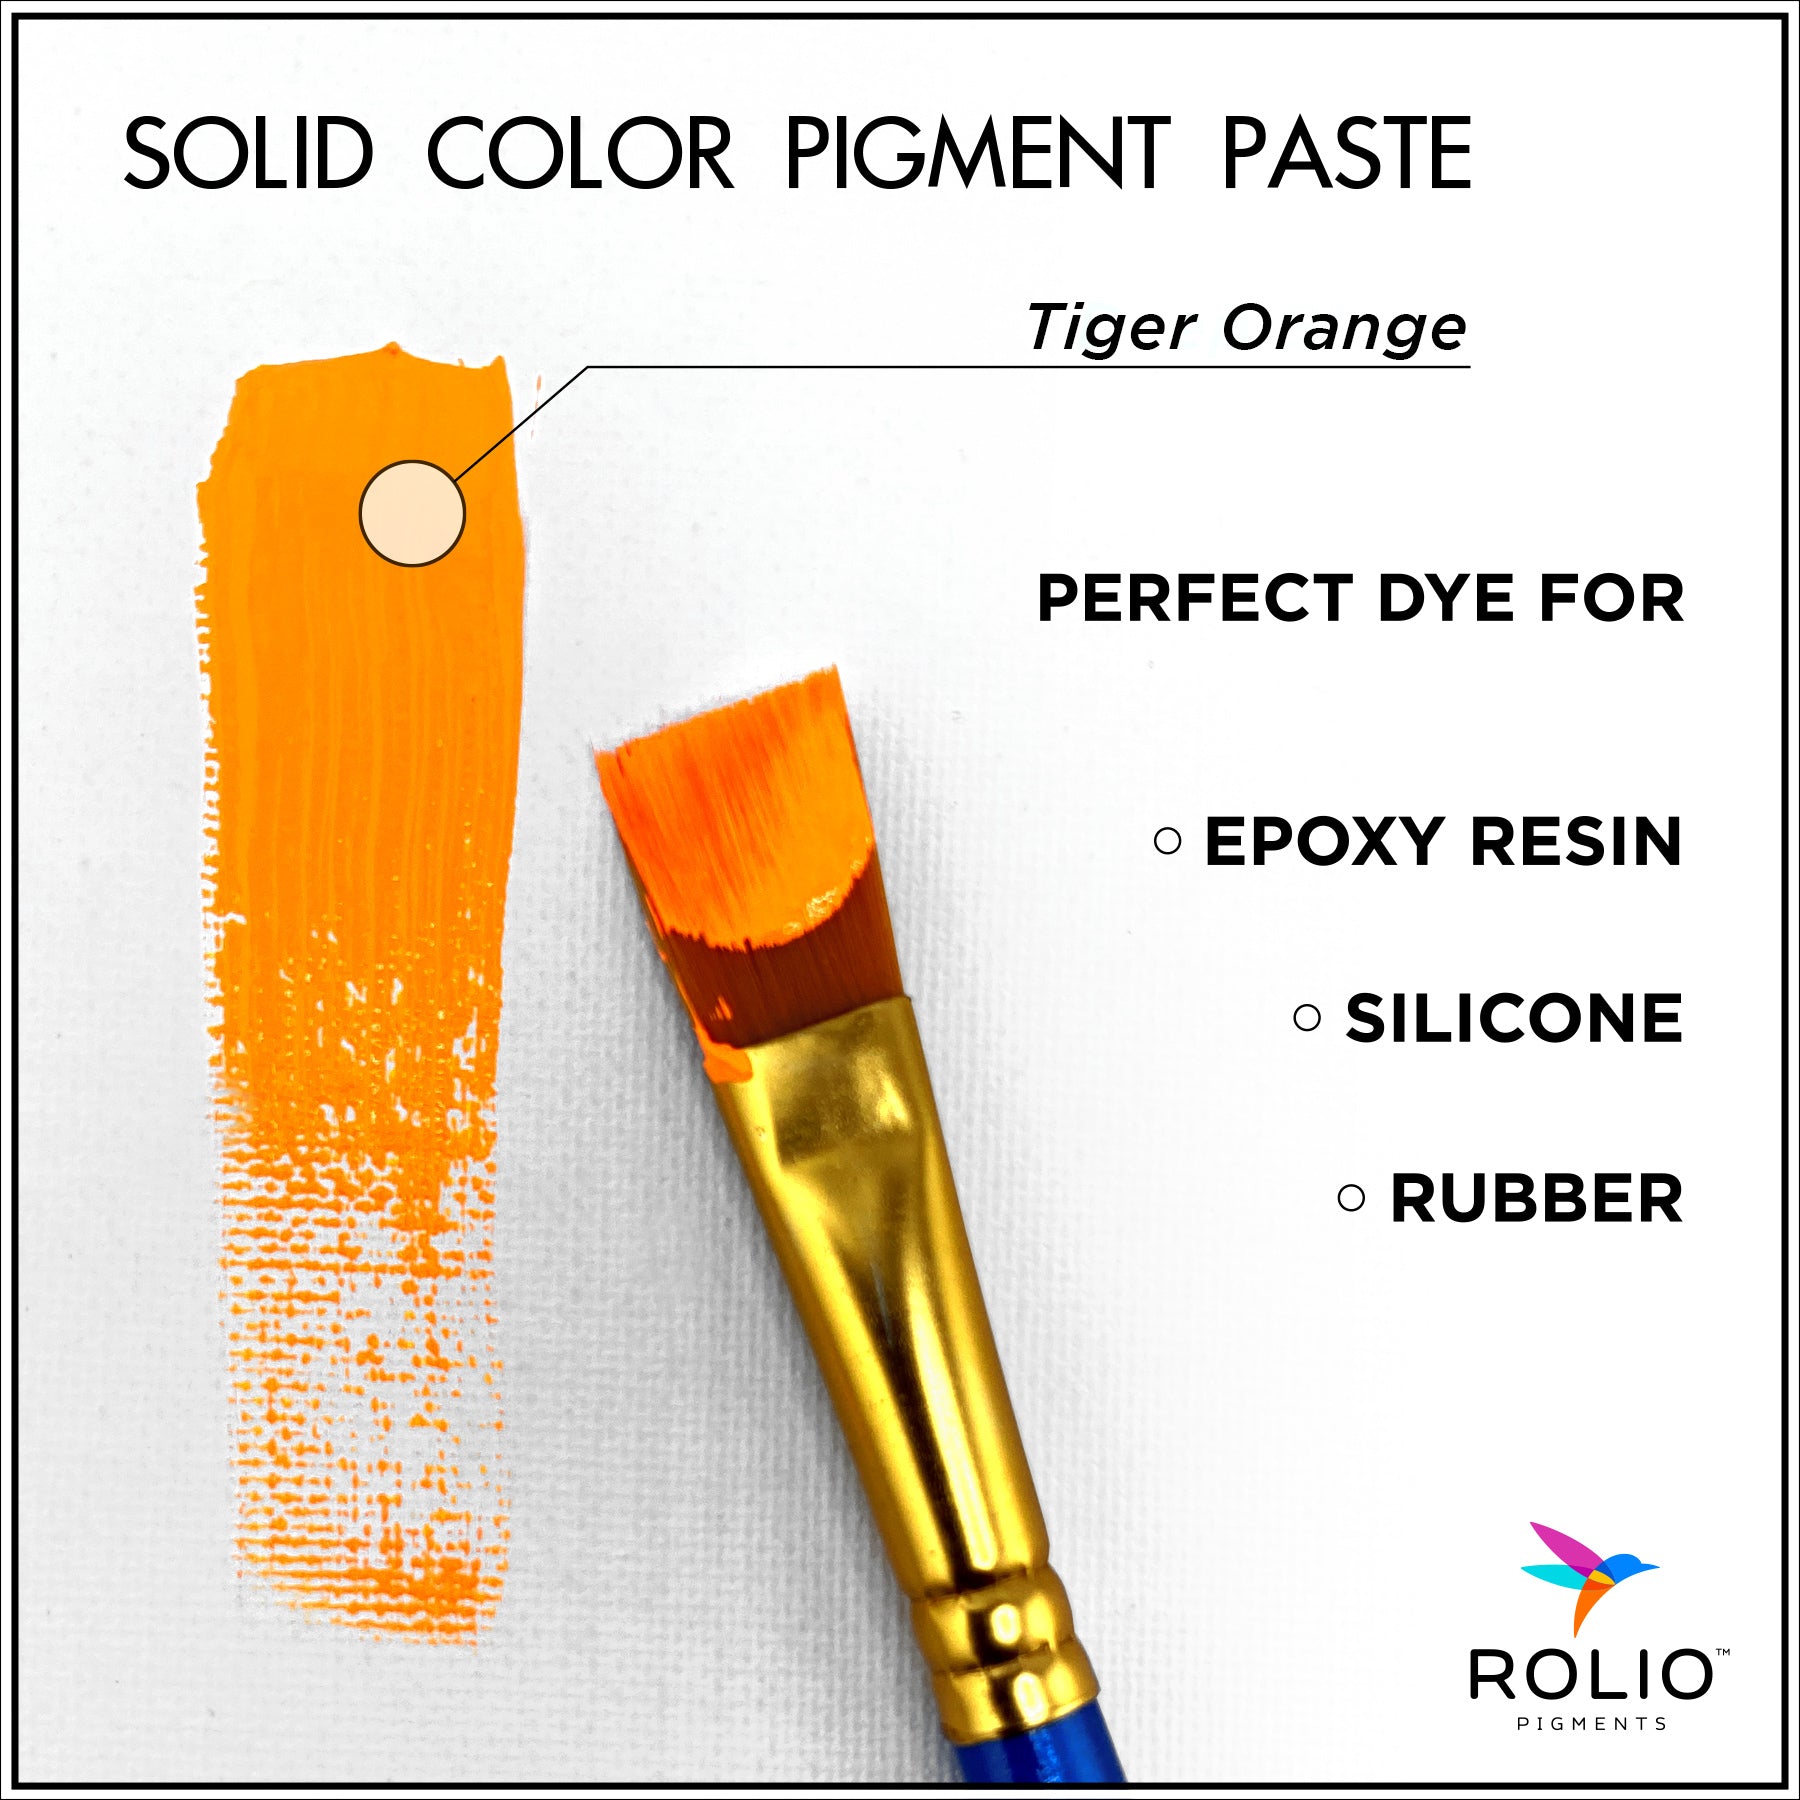 03-Rolio-Tiger-Orange-Pigment-Paste-Description.jpg